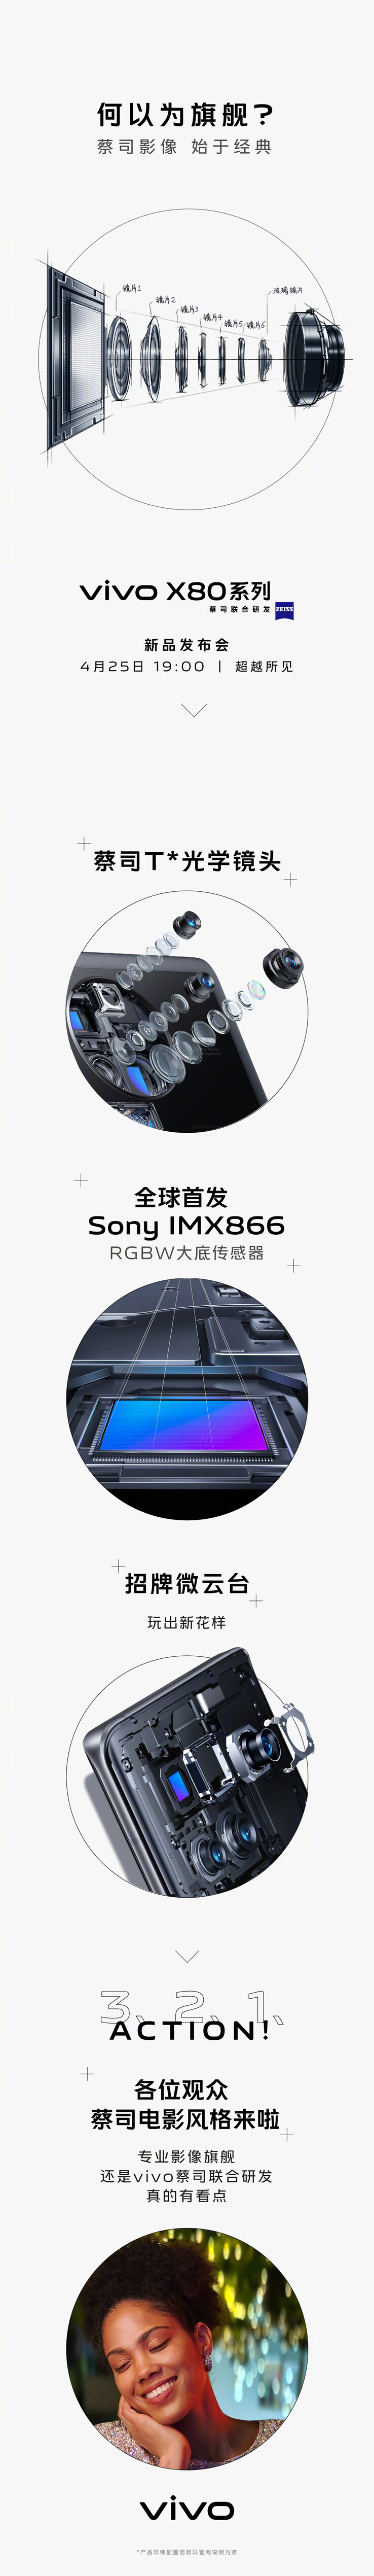 A Vivo provoca a nova câmera principal da Sony dos X80s. (Fonte: Vivo via Weibo)